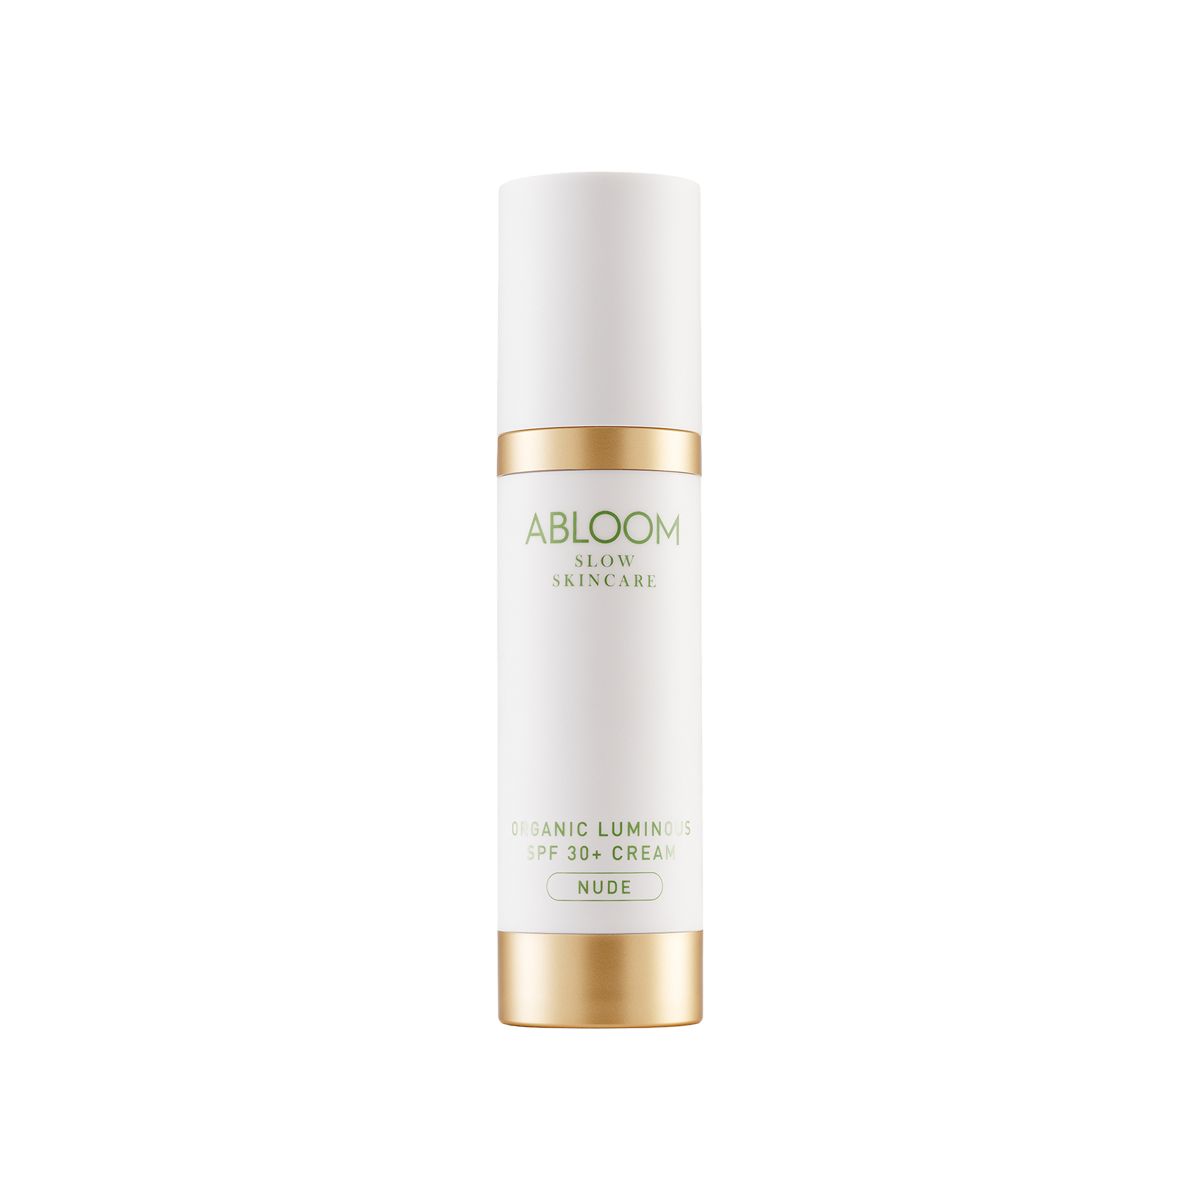 ABLOOM - Organic Luminous SPF Cream Nude